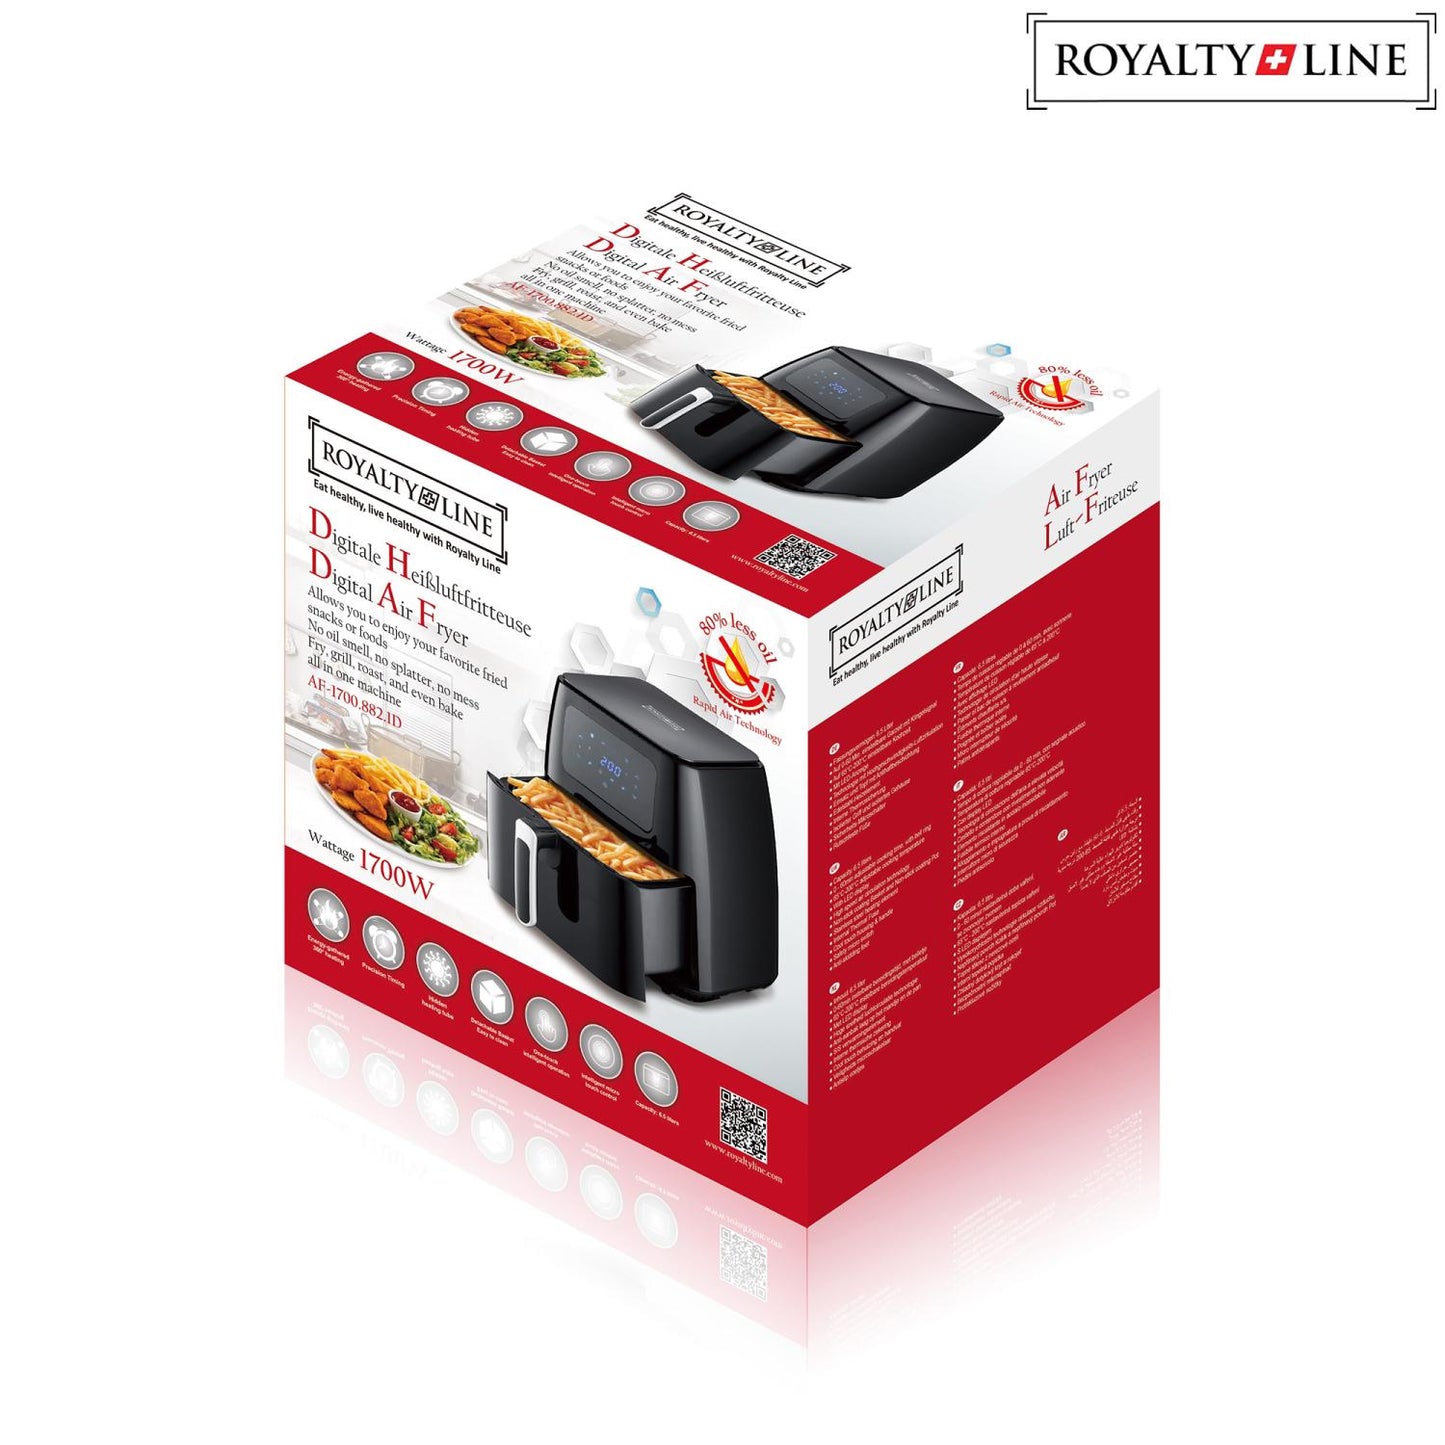 Royalty Line 1700 Digitale Air Fryer